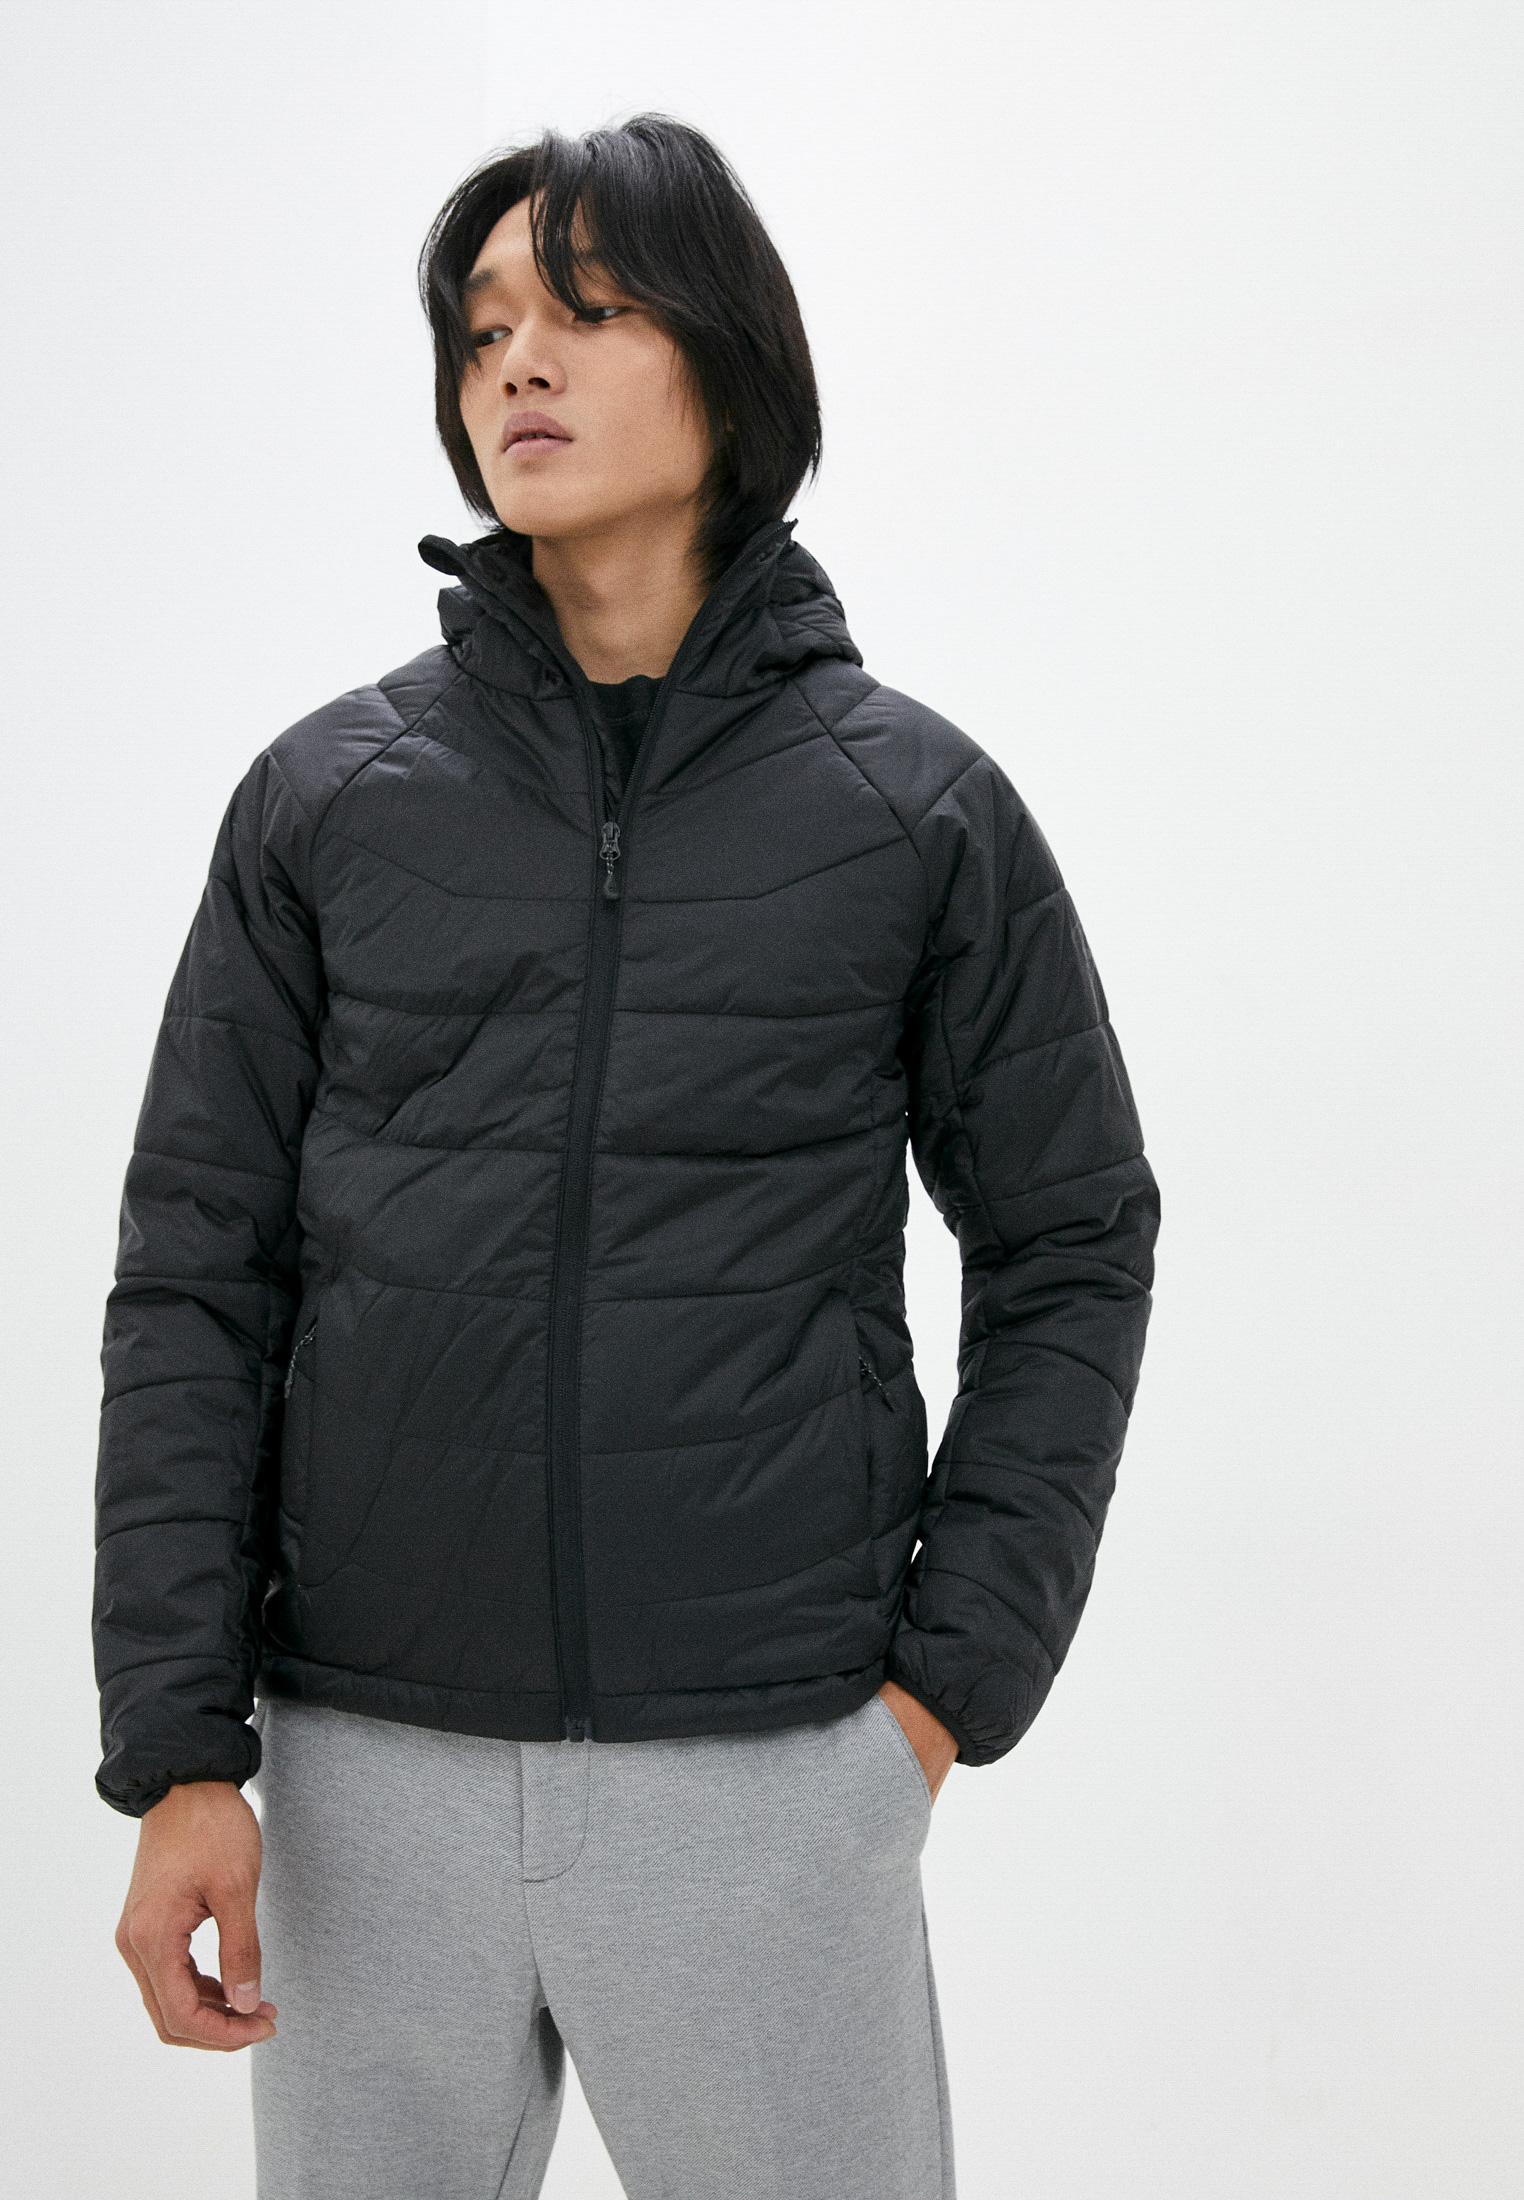 Куртка утепленная Northland, цвет: черный, MP002XM1KFWL — купить в интернет-магазине Lamoda